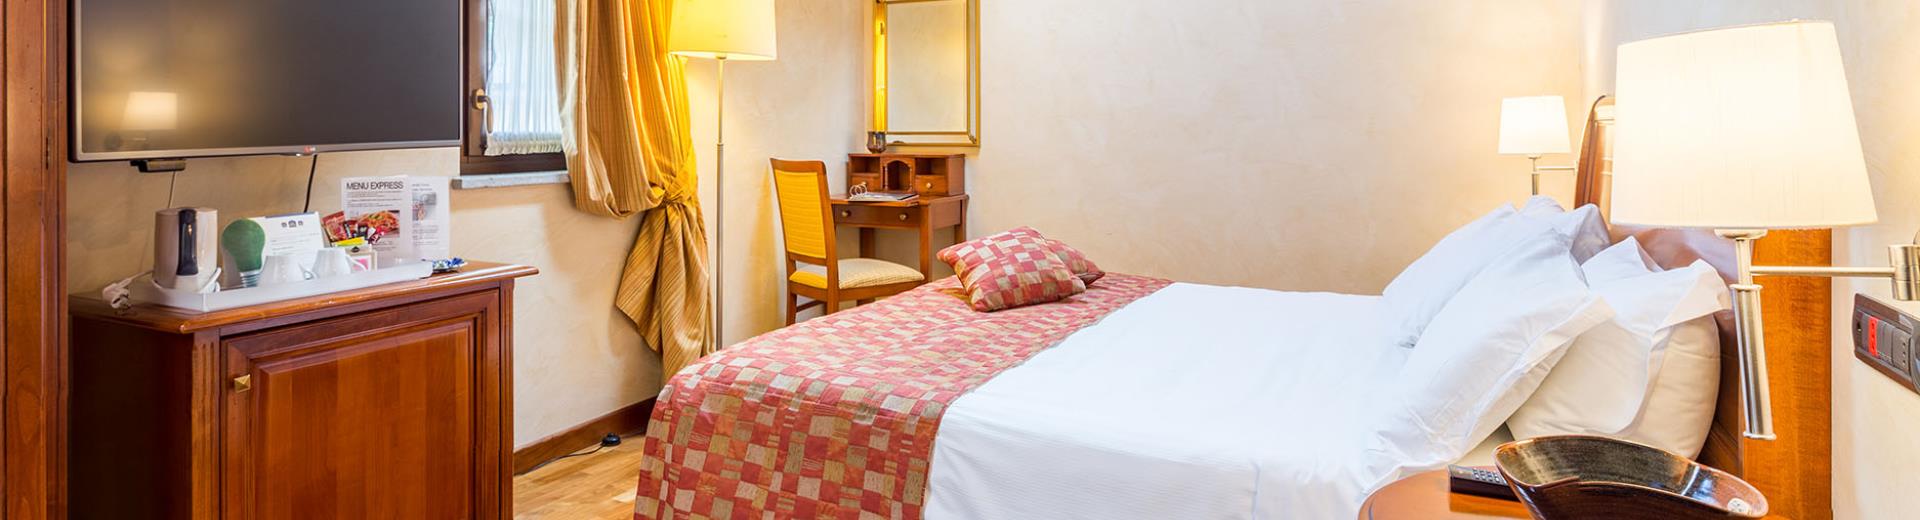 Le camere Superior del Best Western Plus Hotel Le Rondini, a due passi da Torino, sono gioielli di eleganza e suggestione. Finiture di pregio, cabina doccia rigenerante con idromassaggio e bagno turco.